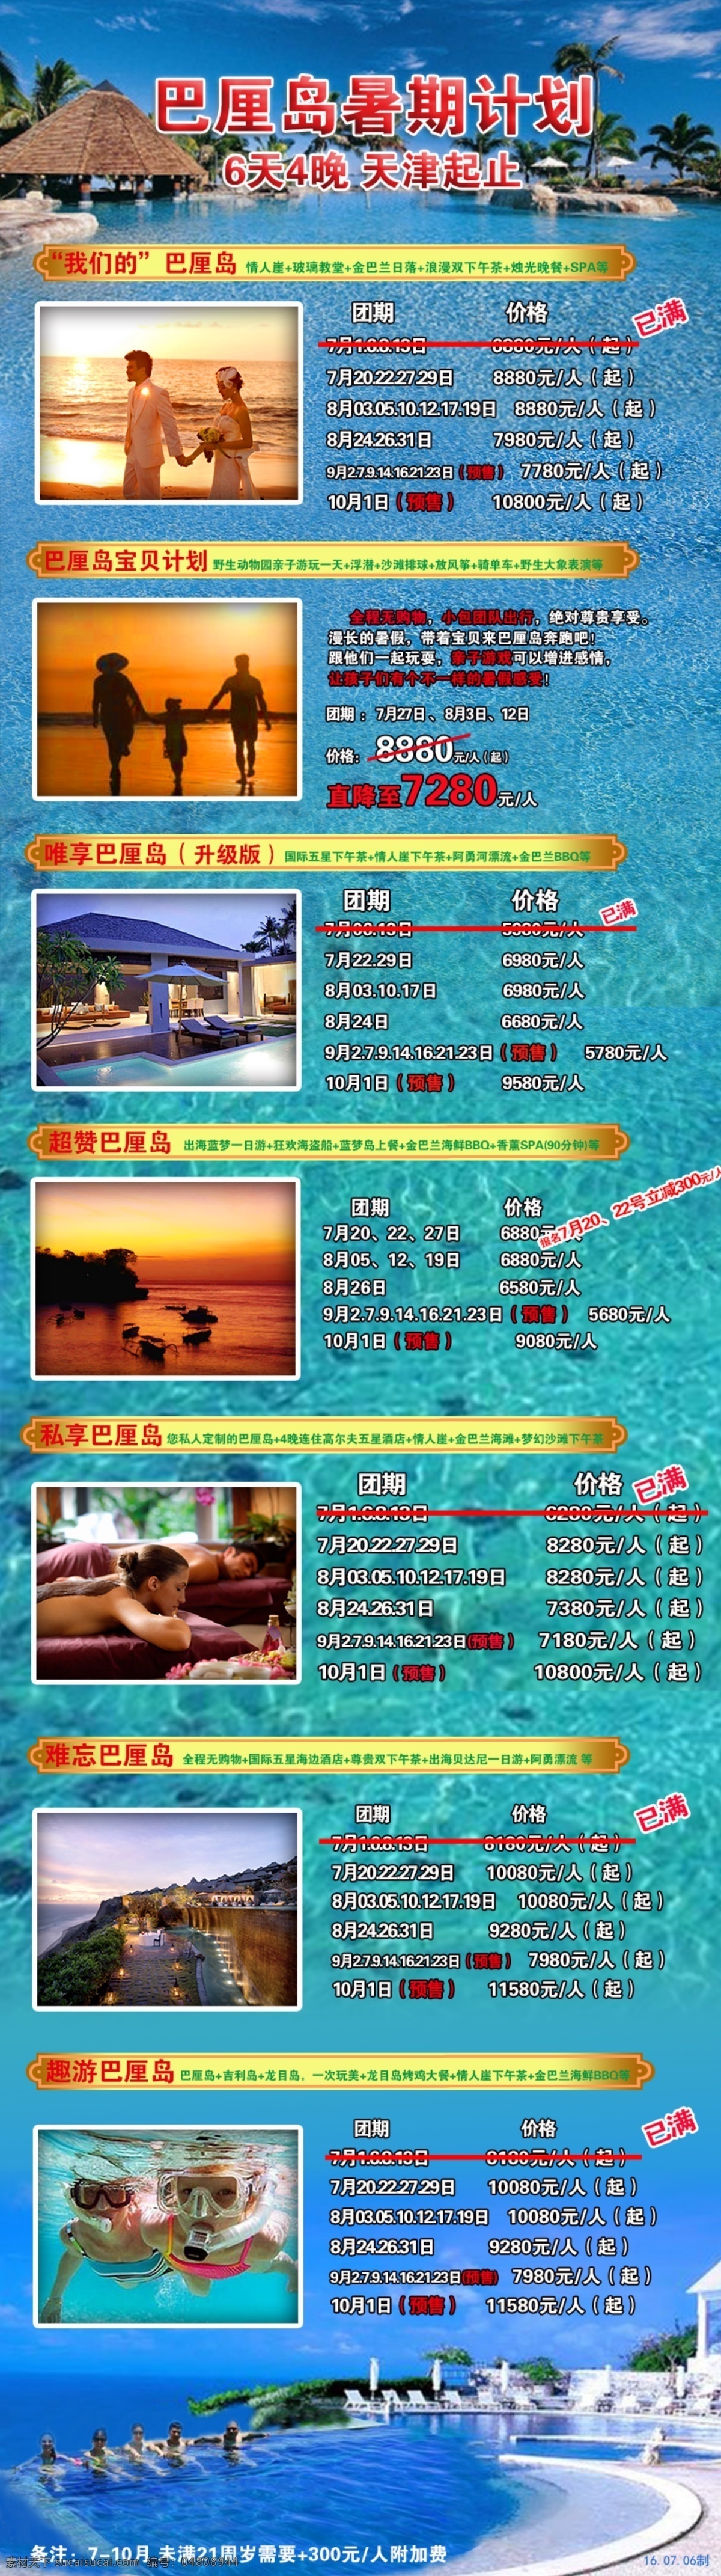 巴厘岛综合 巴厘岛 暑假 计划 广告 宣传 海报 美图 旅游 青色 天蓝色